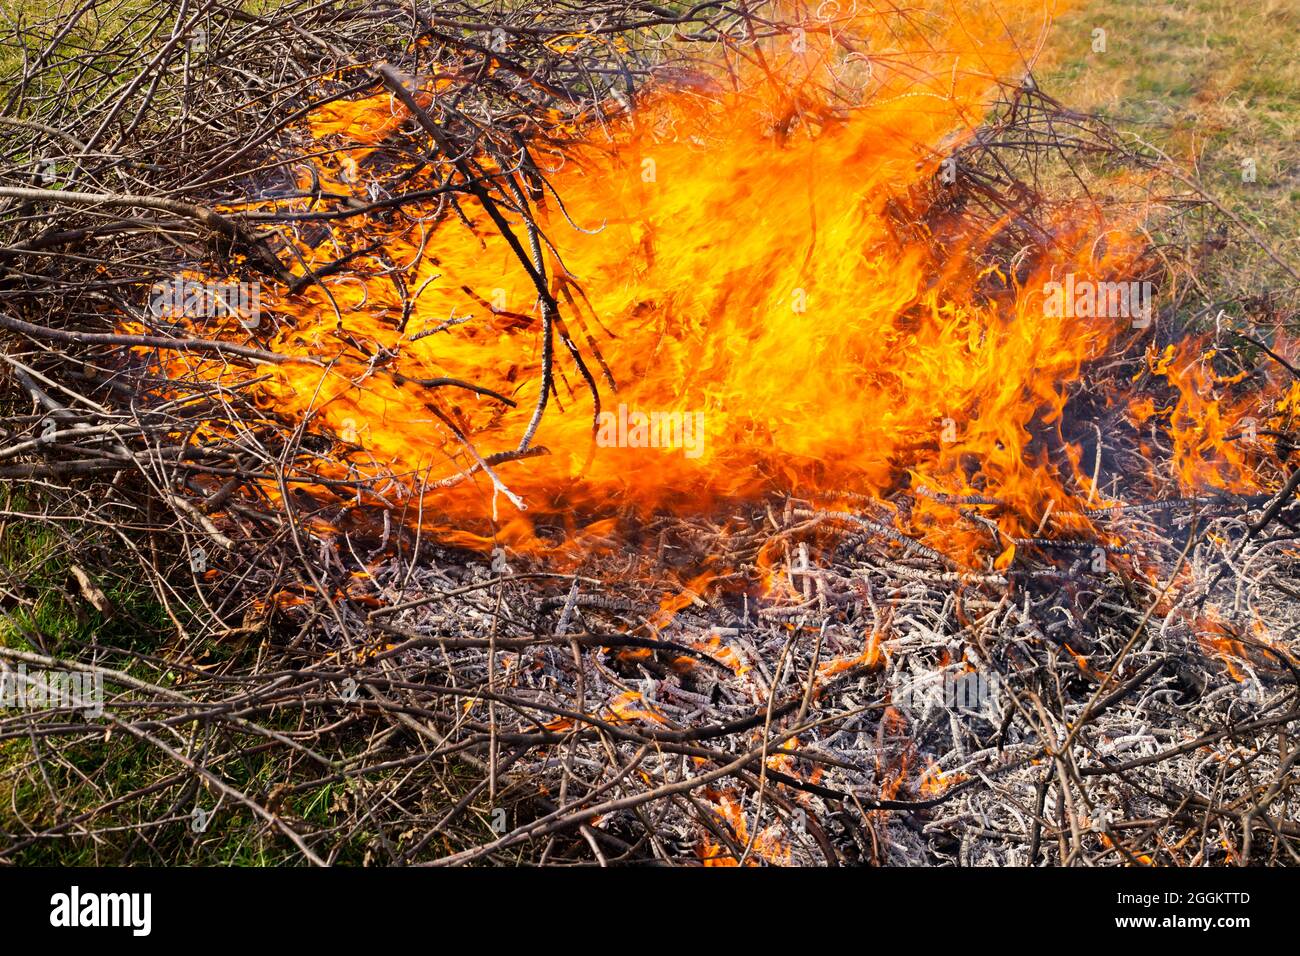 Chispa Del Fuego De Bengala Foto de archivo - Imagen de verano